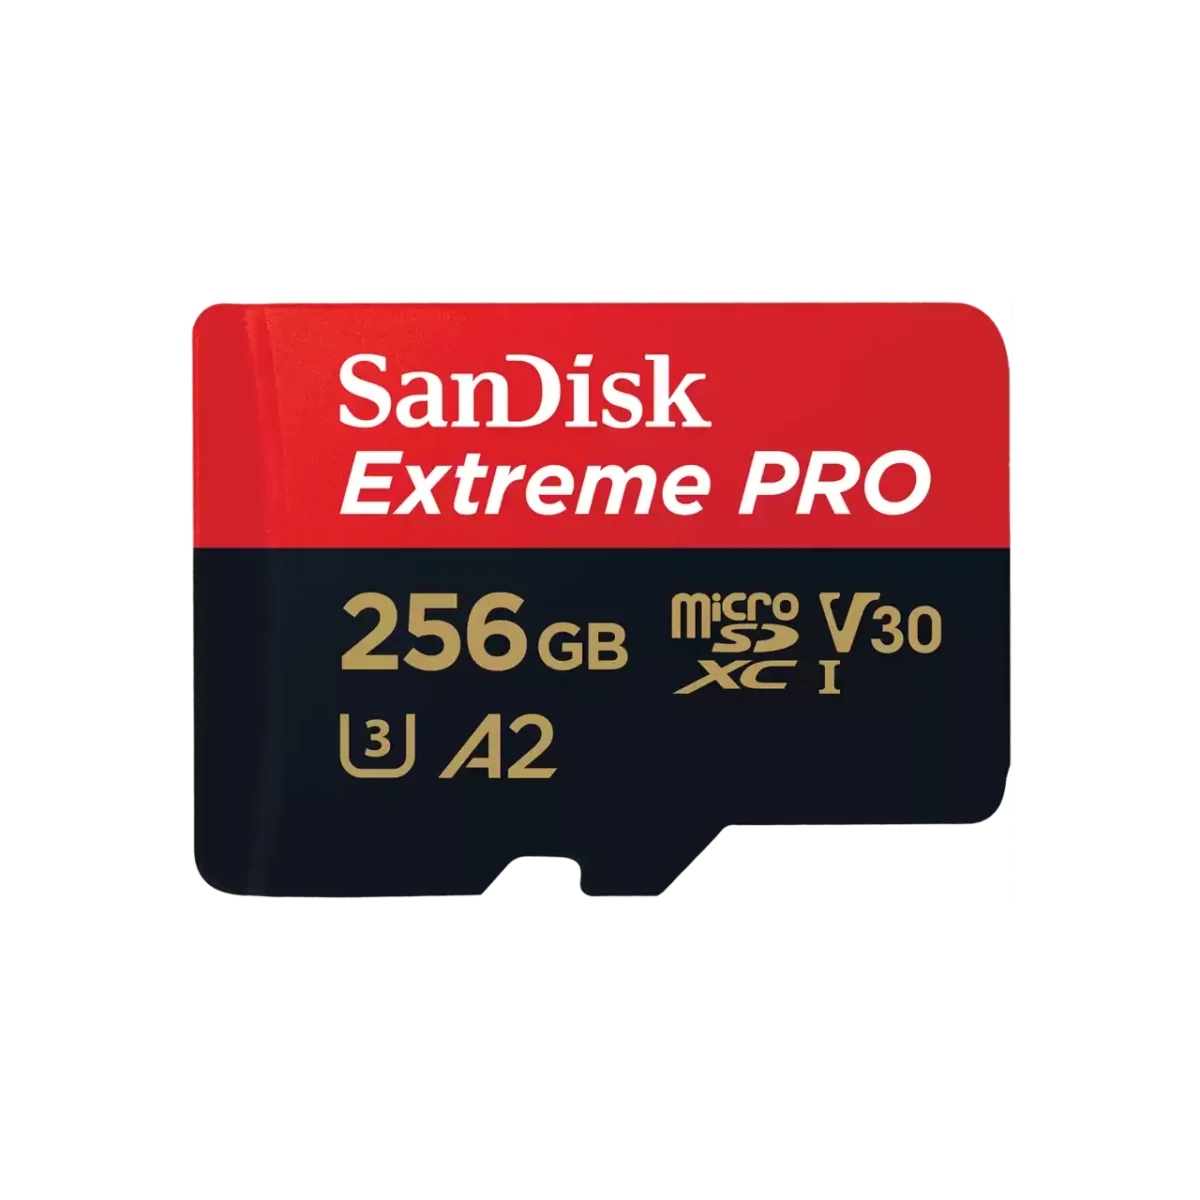 SanDisk Extreme PRO microSDXC™ UHS-I CARD